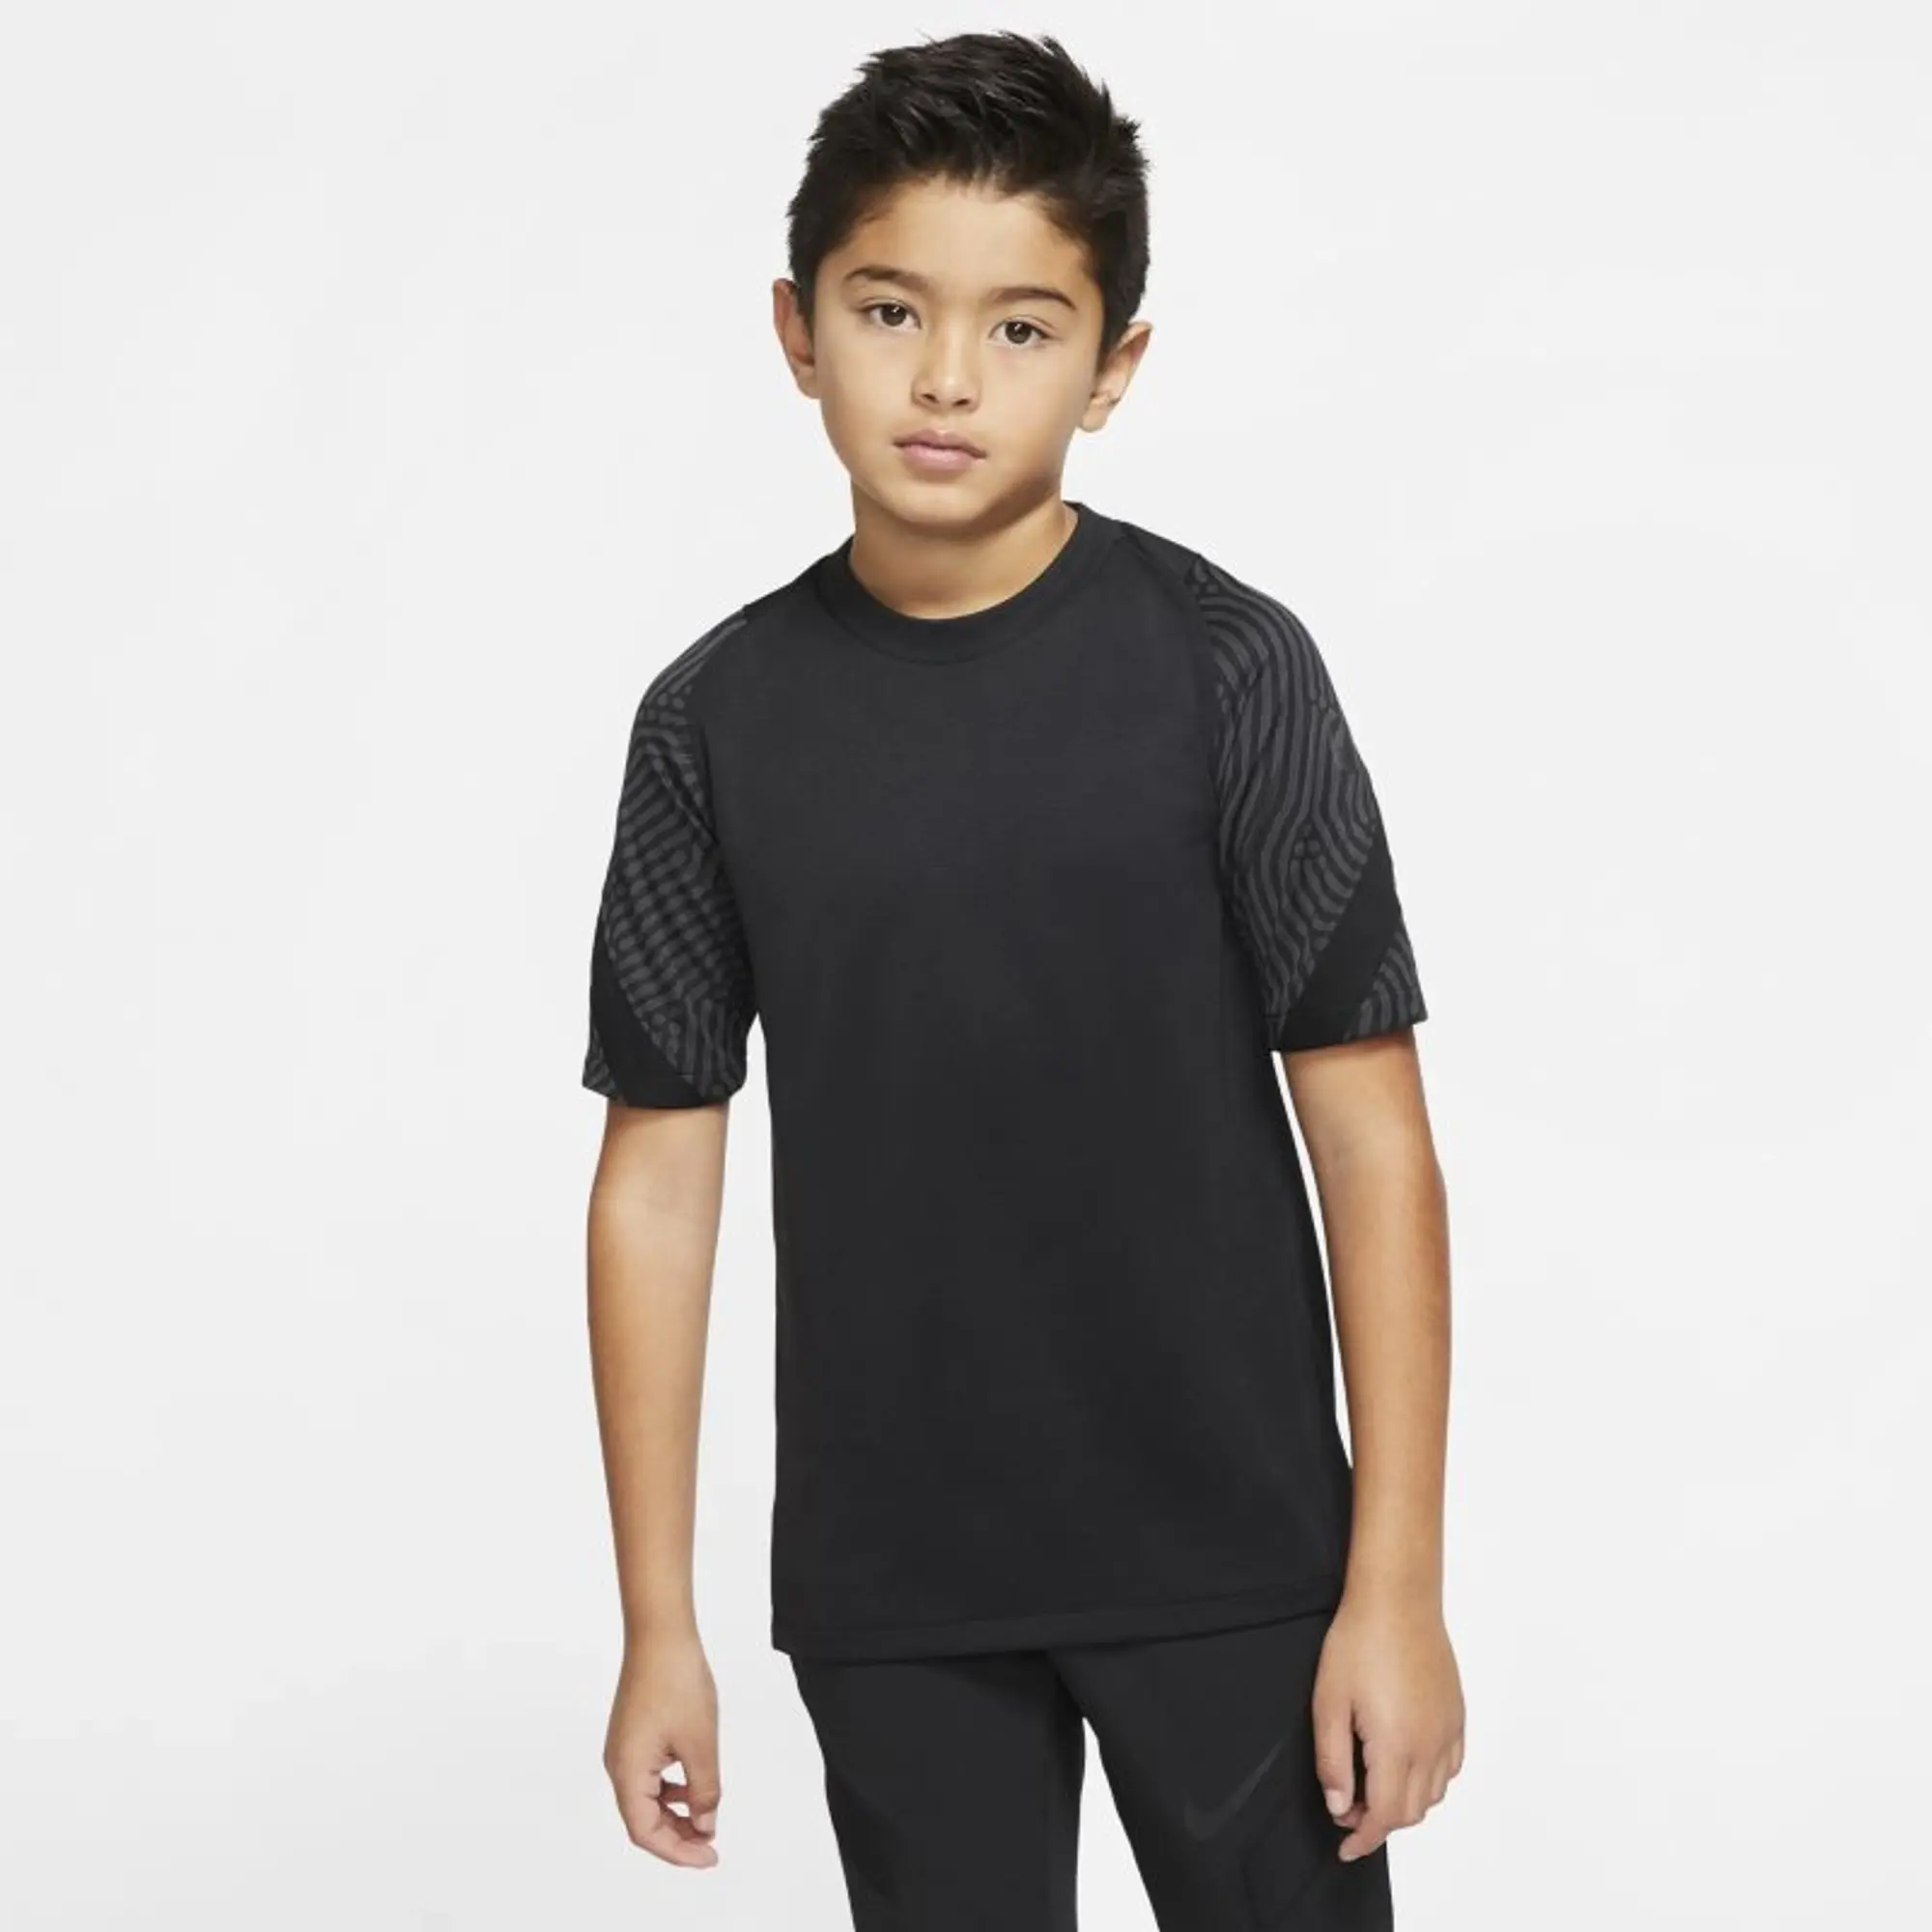 Nike Breathe Strike Ng Short Sleeve T-shirt  - Black